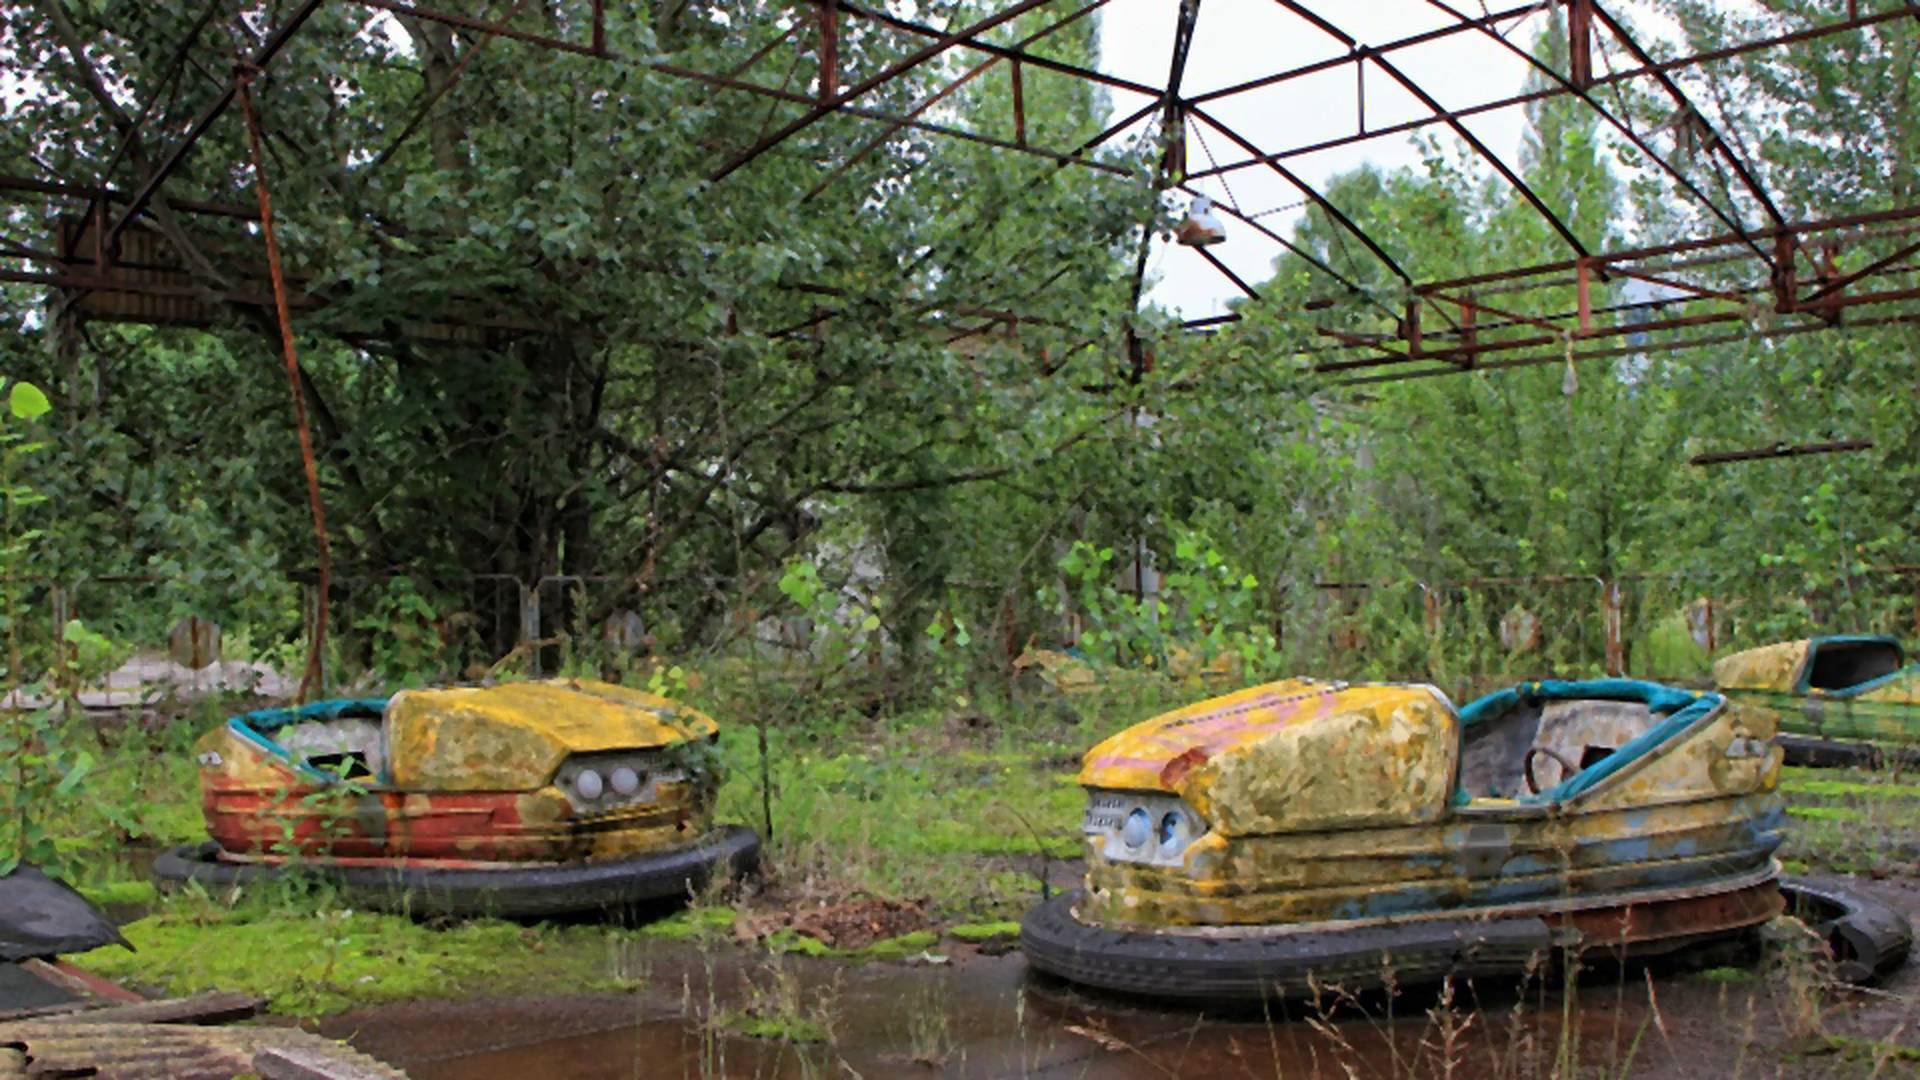 Rekordowa liczba wycieczek do Czarnobyla. Polacy na drugim miejscu wśród najczęściej odwiedzających